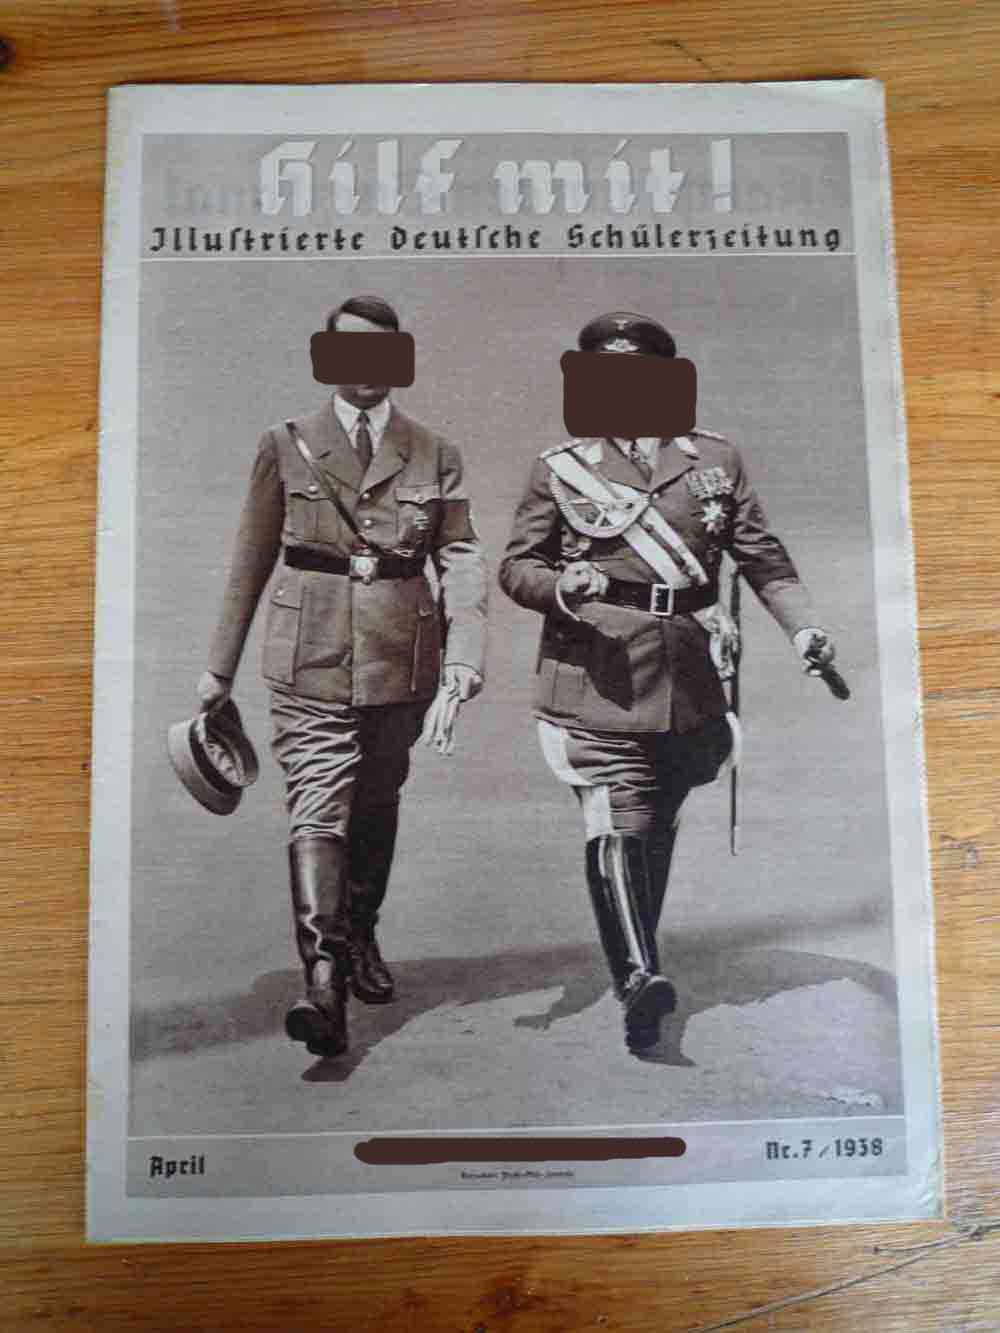 Hild Mit! Illustrierte deutsche Schülerzeitung